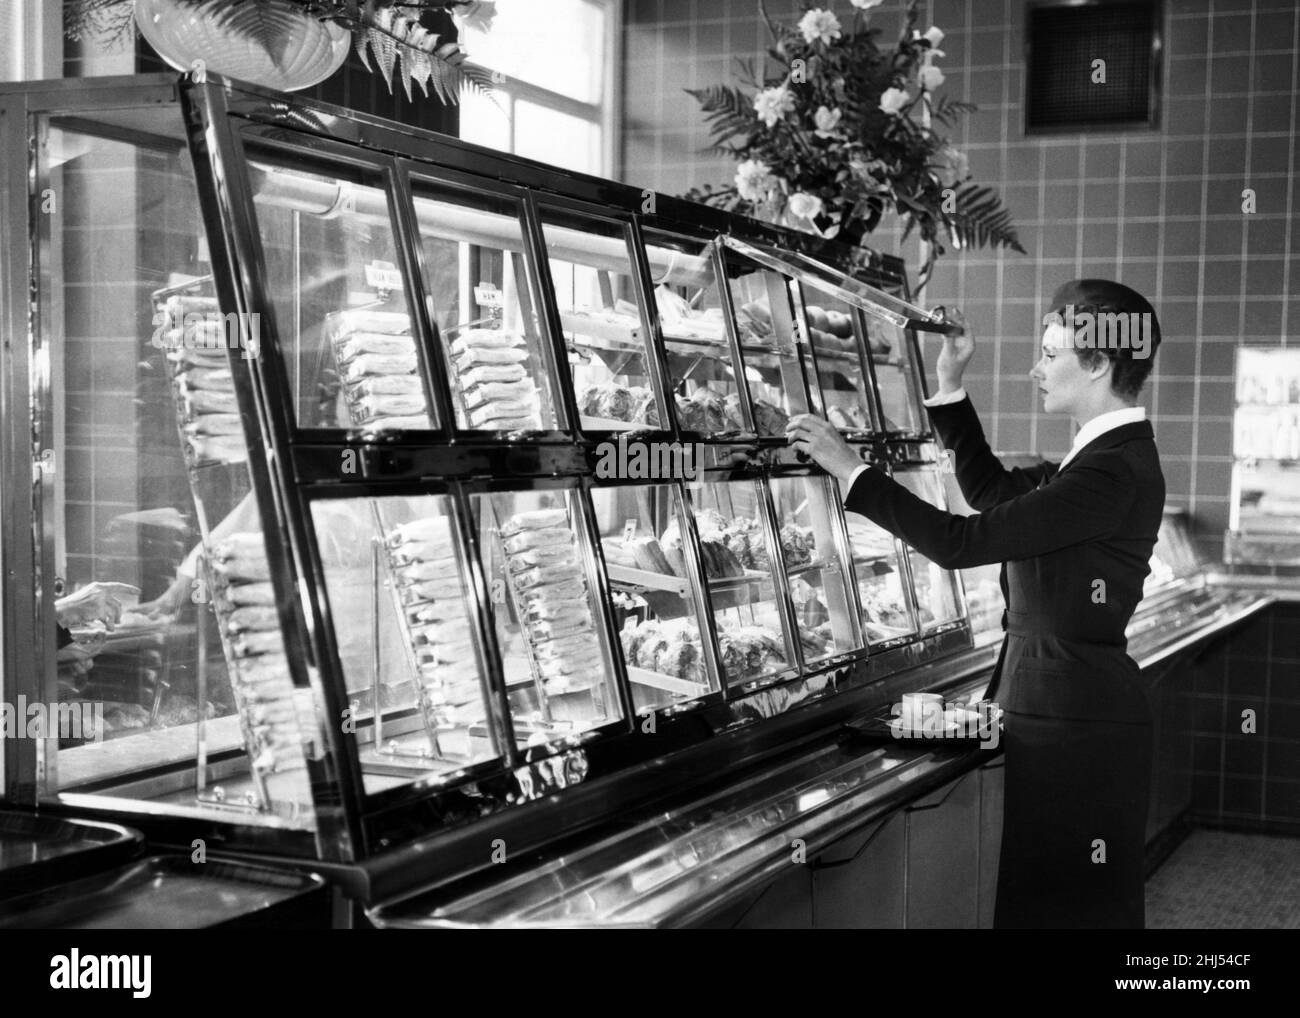 Nuovo snack bar refrigerato self service alla stazione St pancreas, Londra, 15th ottobre 1959. Chiamato il Midland, è la prima di molte caffetterie di nuovo stile ad essere installato dalle ferrovie britanniche alle stazioni ferroviarie. Nella foto, Tonie Funnel, 25 anni di British Railways hostess. Foto Stock